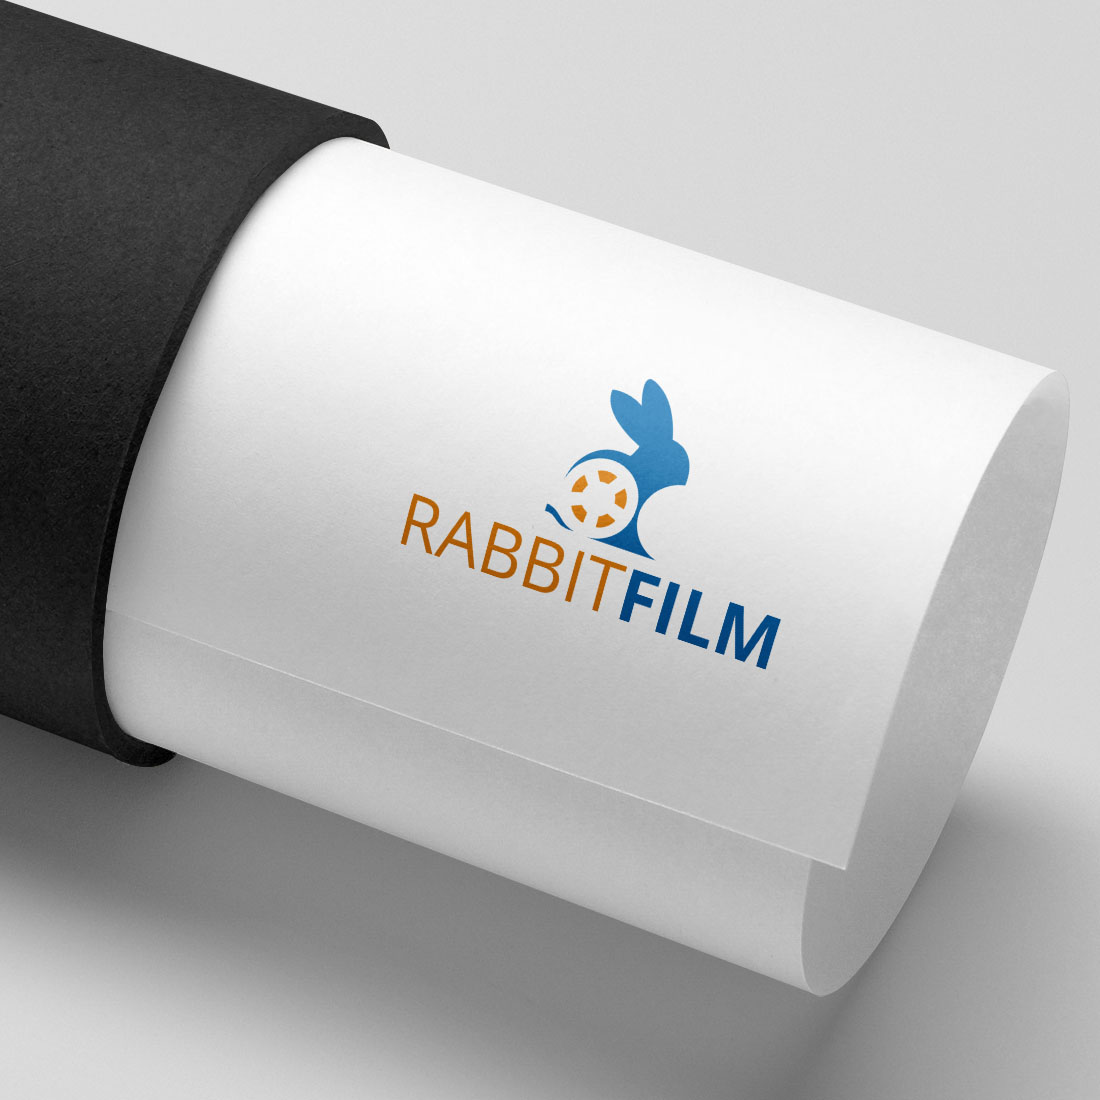 Clean Rabbit Film Logo Design cover image.